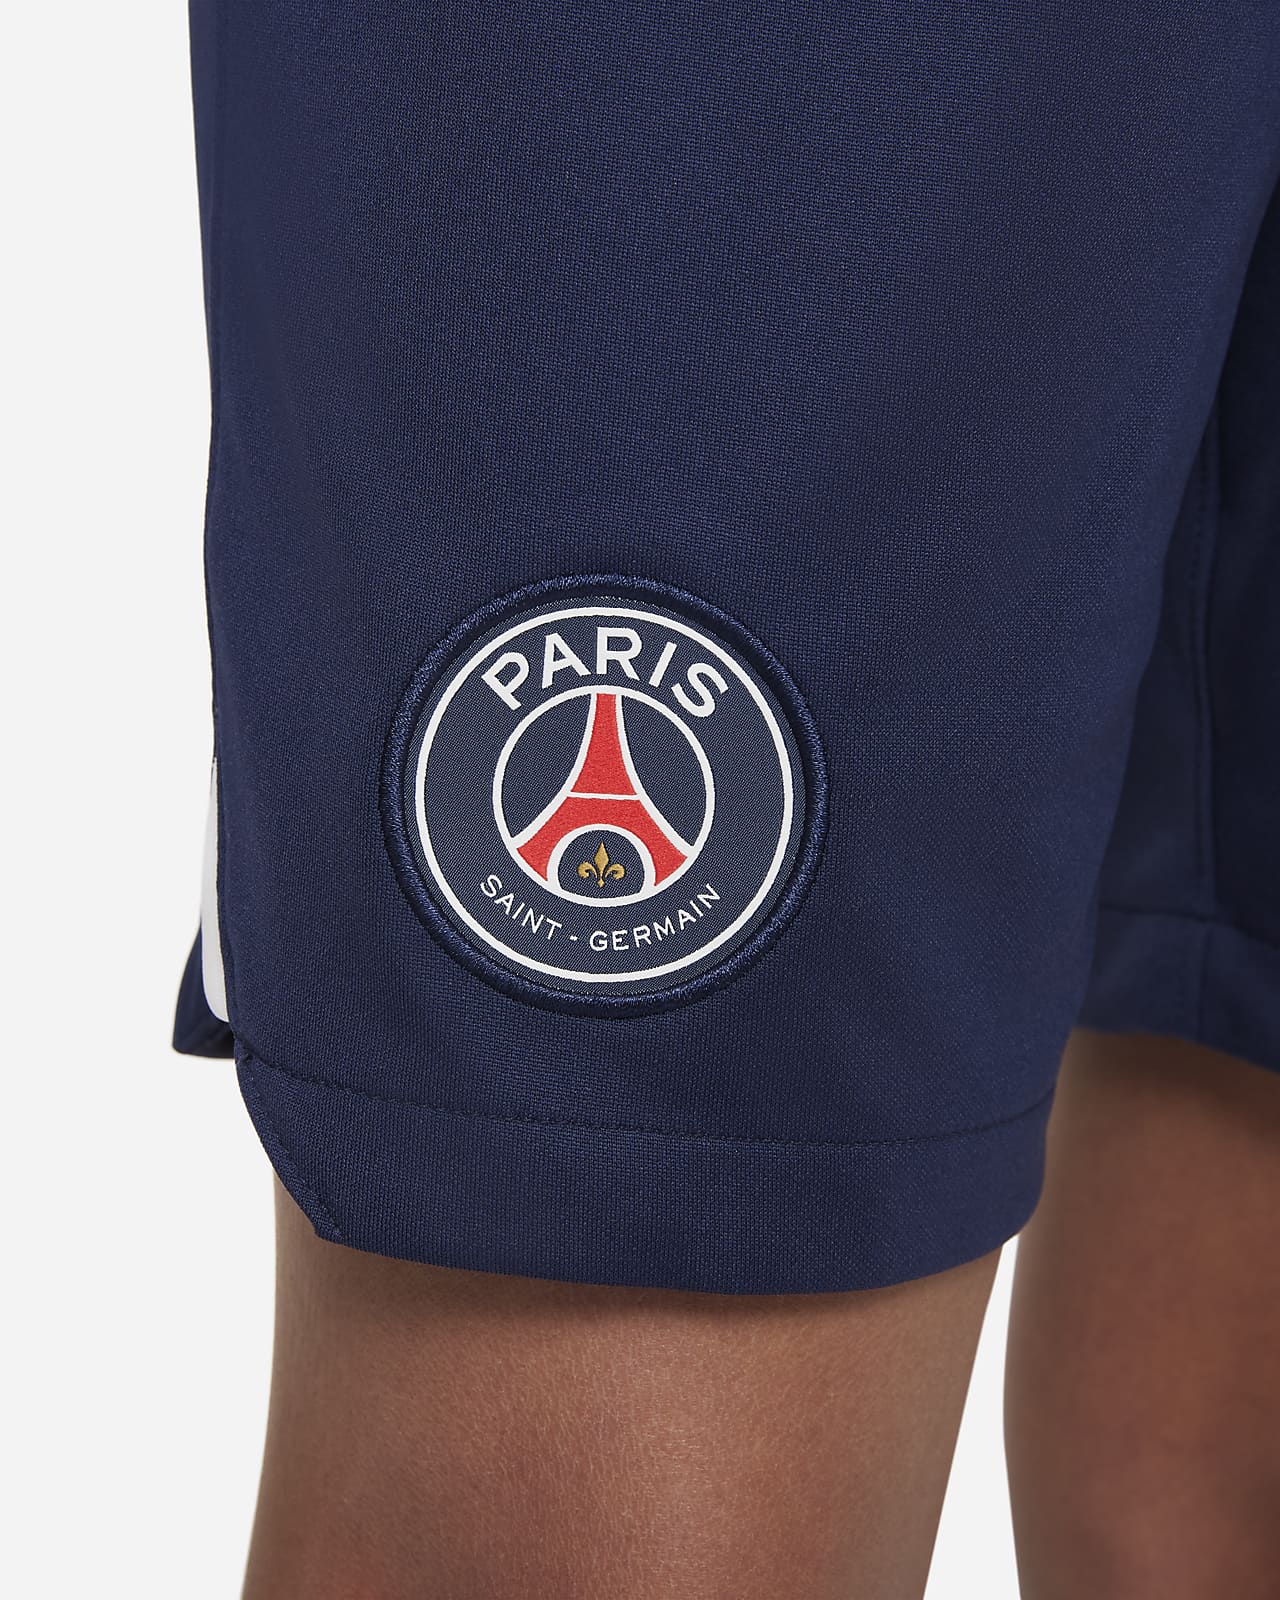 Kinematica tuberculose advocaat Paris Saint-Germain 2022/23 Stadium Home Big Kids' Nike Dri-FIT Soccer  Shorts. Nike.com